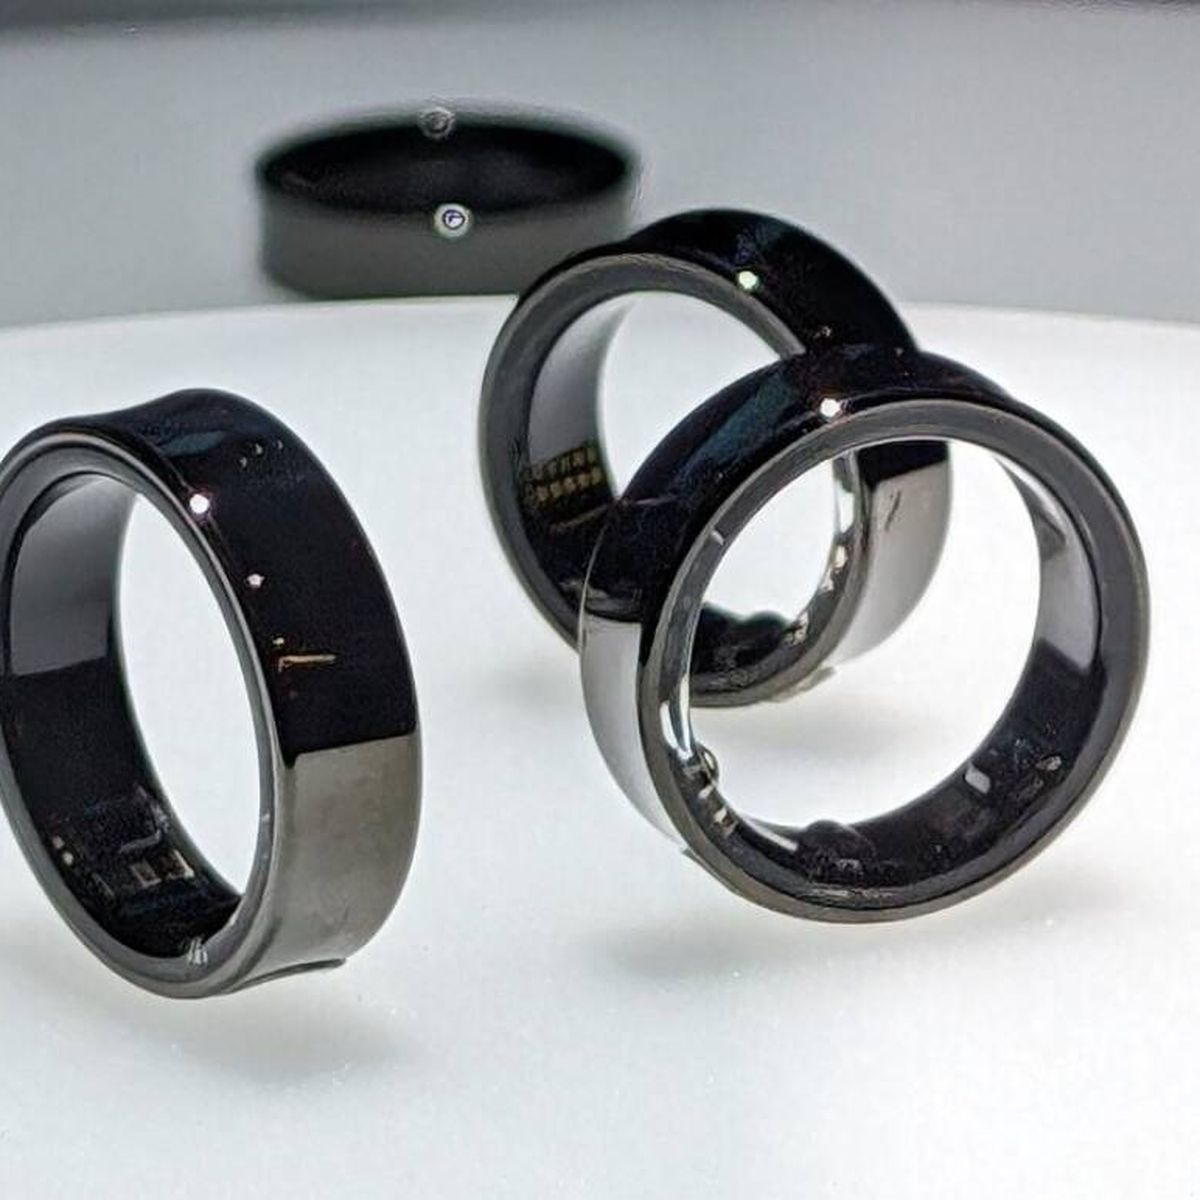 Presenta Samsung su anillo inteligente que prioriza la salud